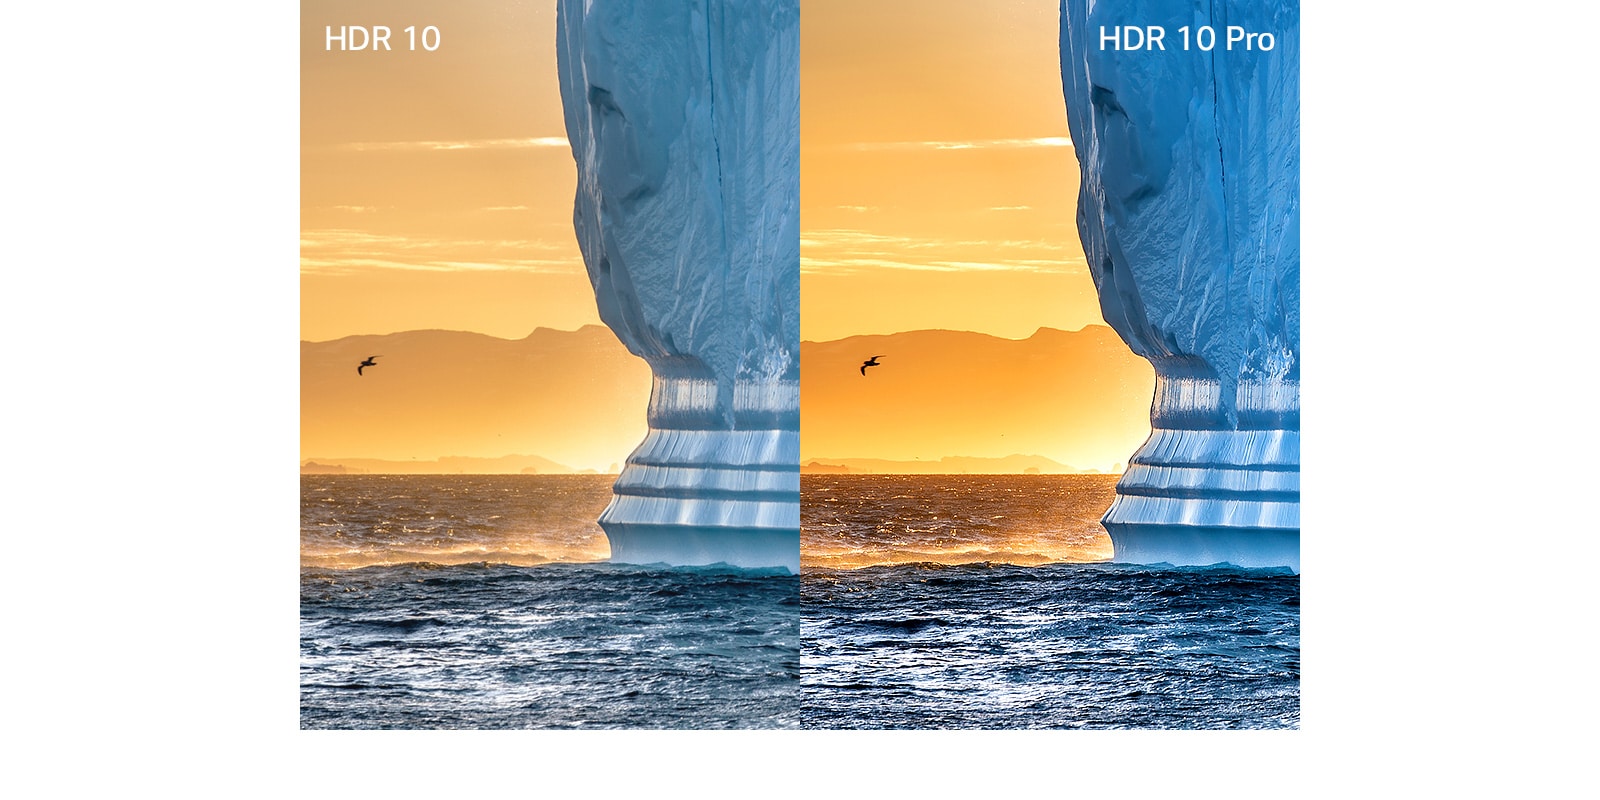 صورة لجرف كبير ينبثق من الماء على خلفية غروب الشمس البرتقالي. يظهر بالجانب الأيسر الصورة بتقنية HDR، وبالجانب الأيمن بتقنية HDR 10 Pro التي تتميز بمزيد من التفاصيل.